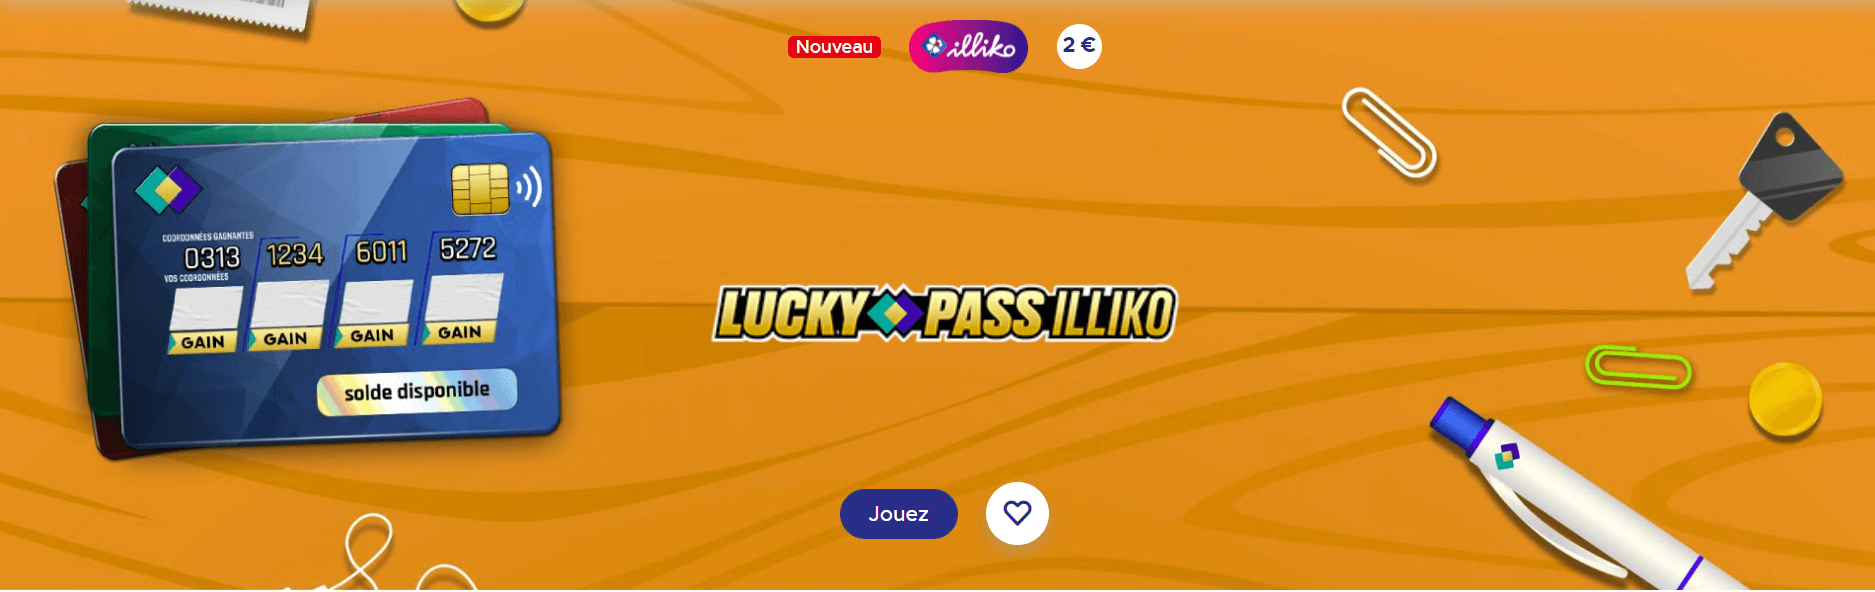 Lucky Pass Illiko : remportez jusqu’à 20 000€